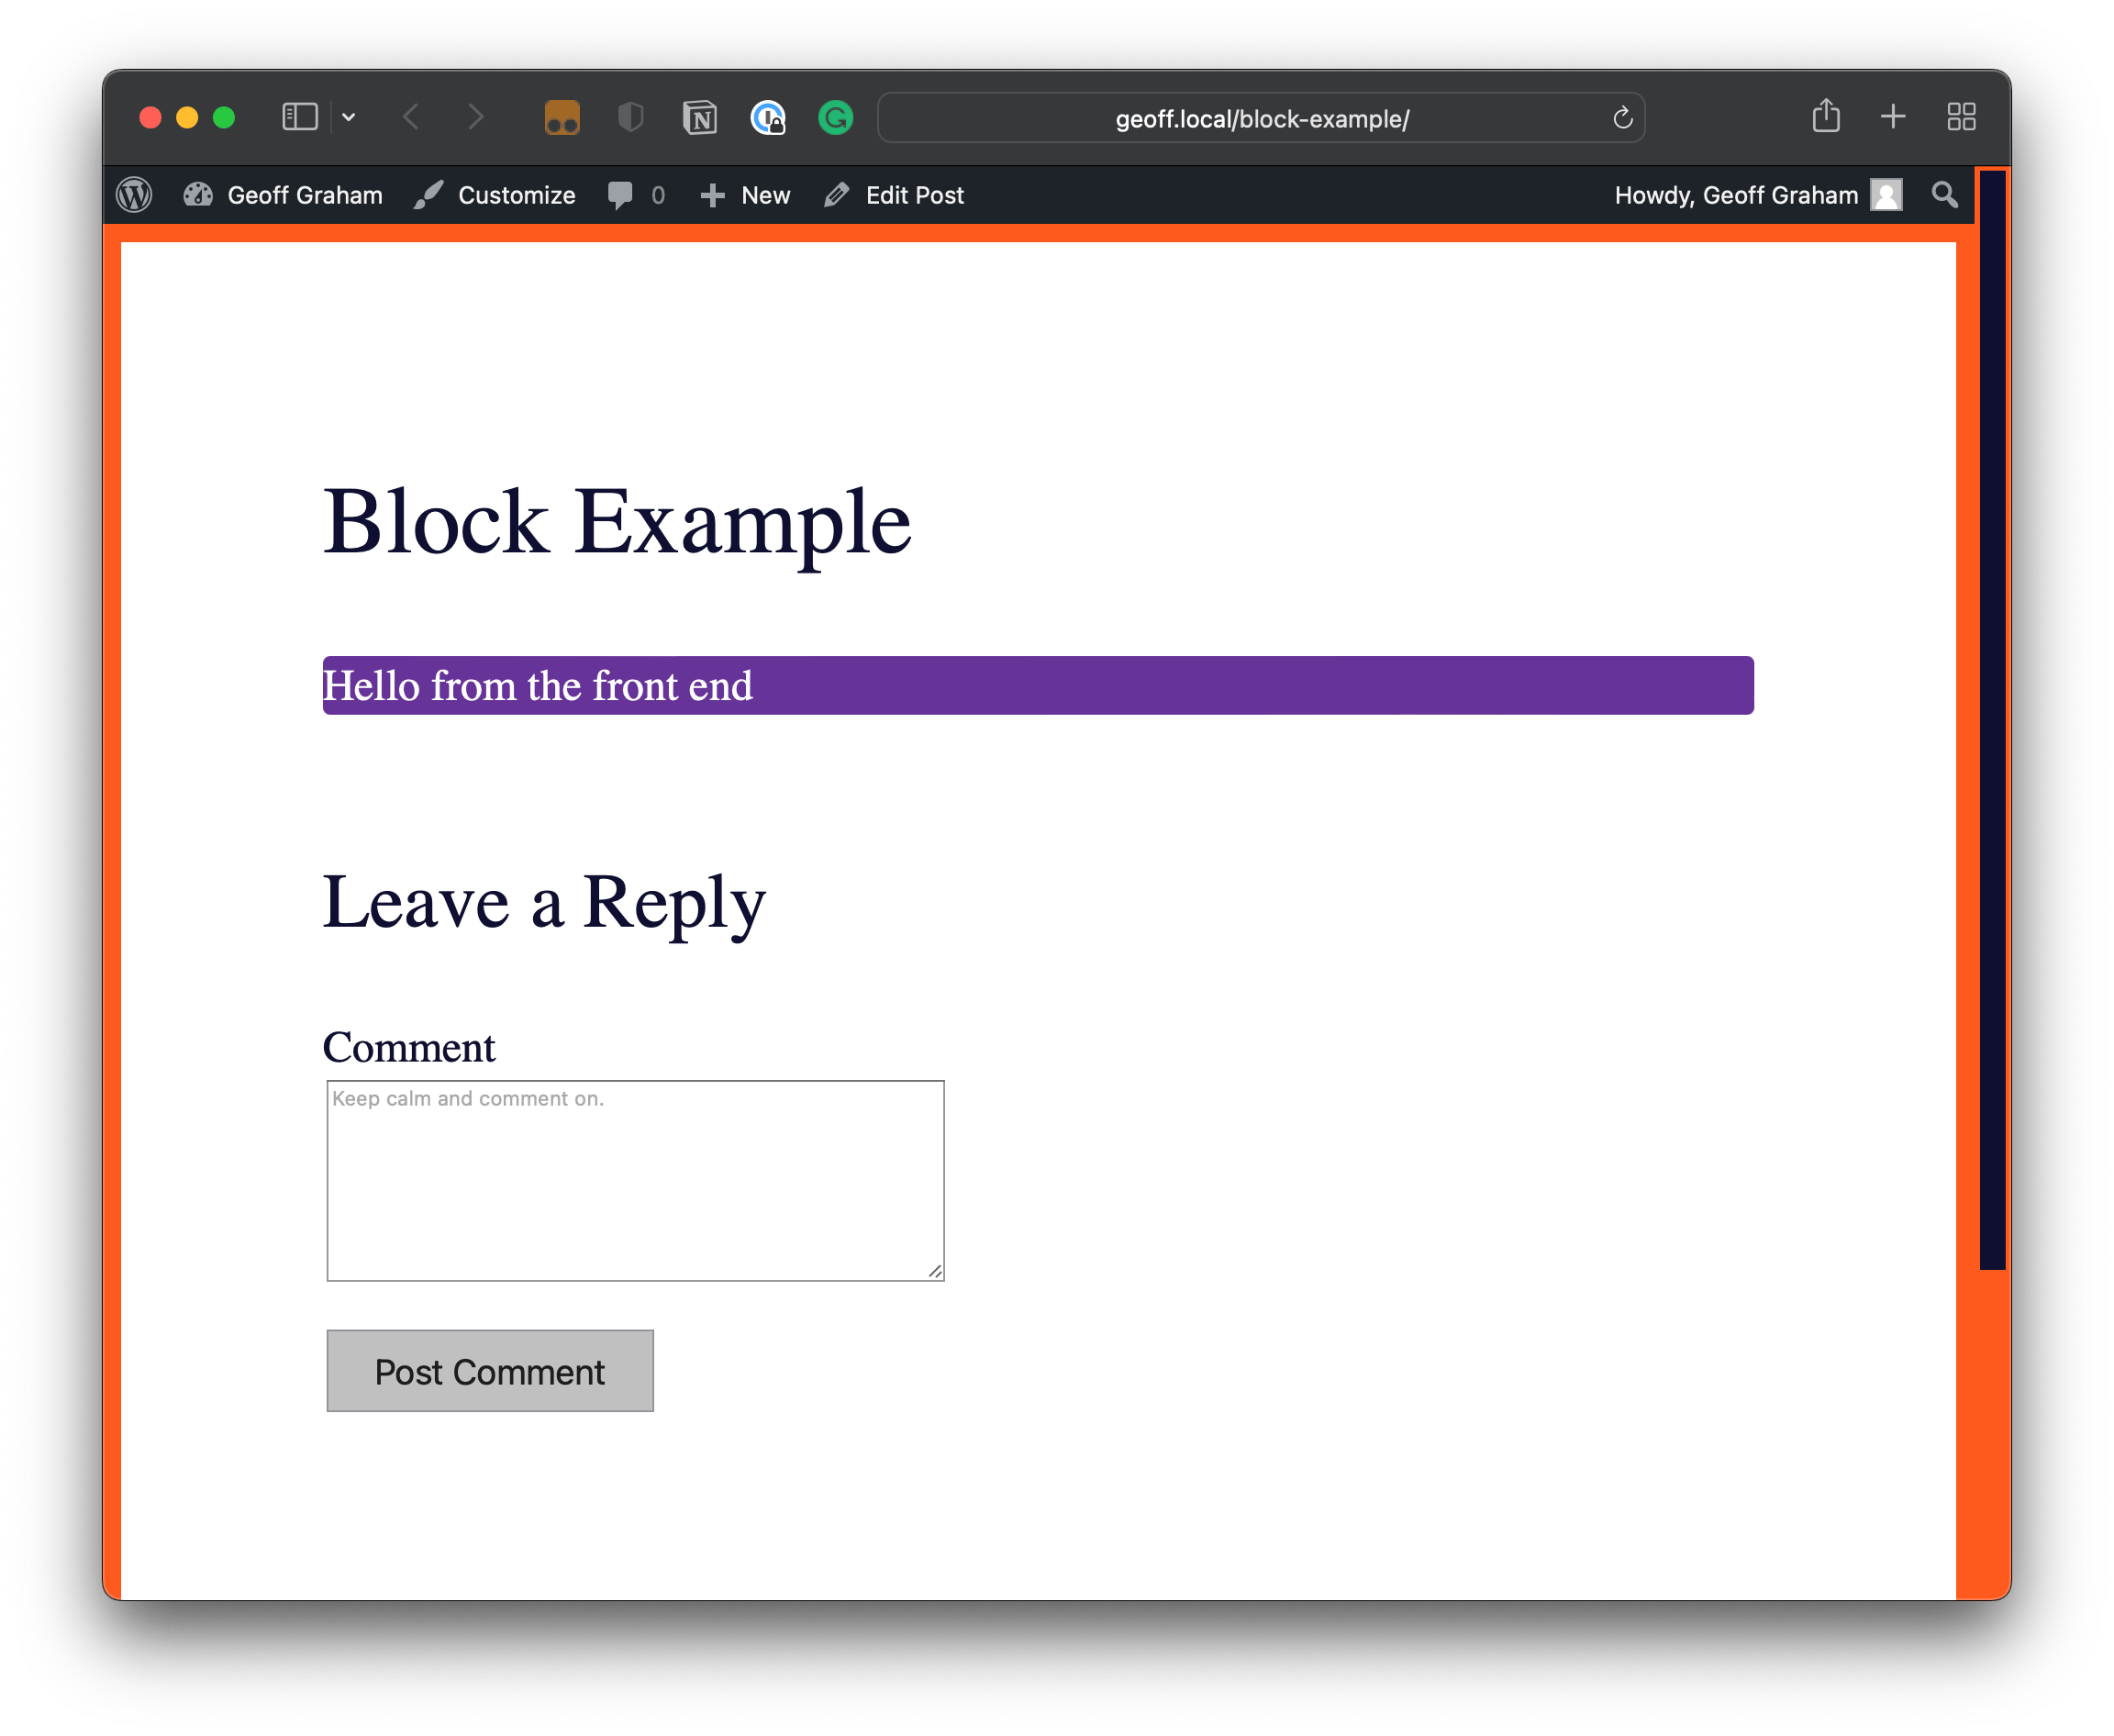 pullquote 블록은 검정색 텍스트 뒤에 레베카 보라색 배경이 적용된 프런트 엔드를 이온화합니다.